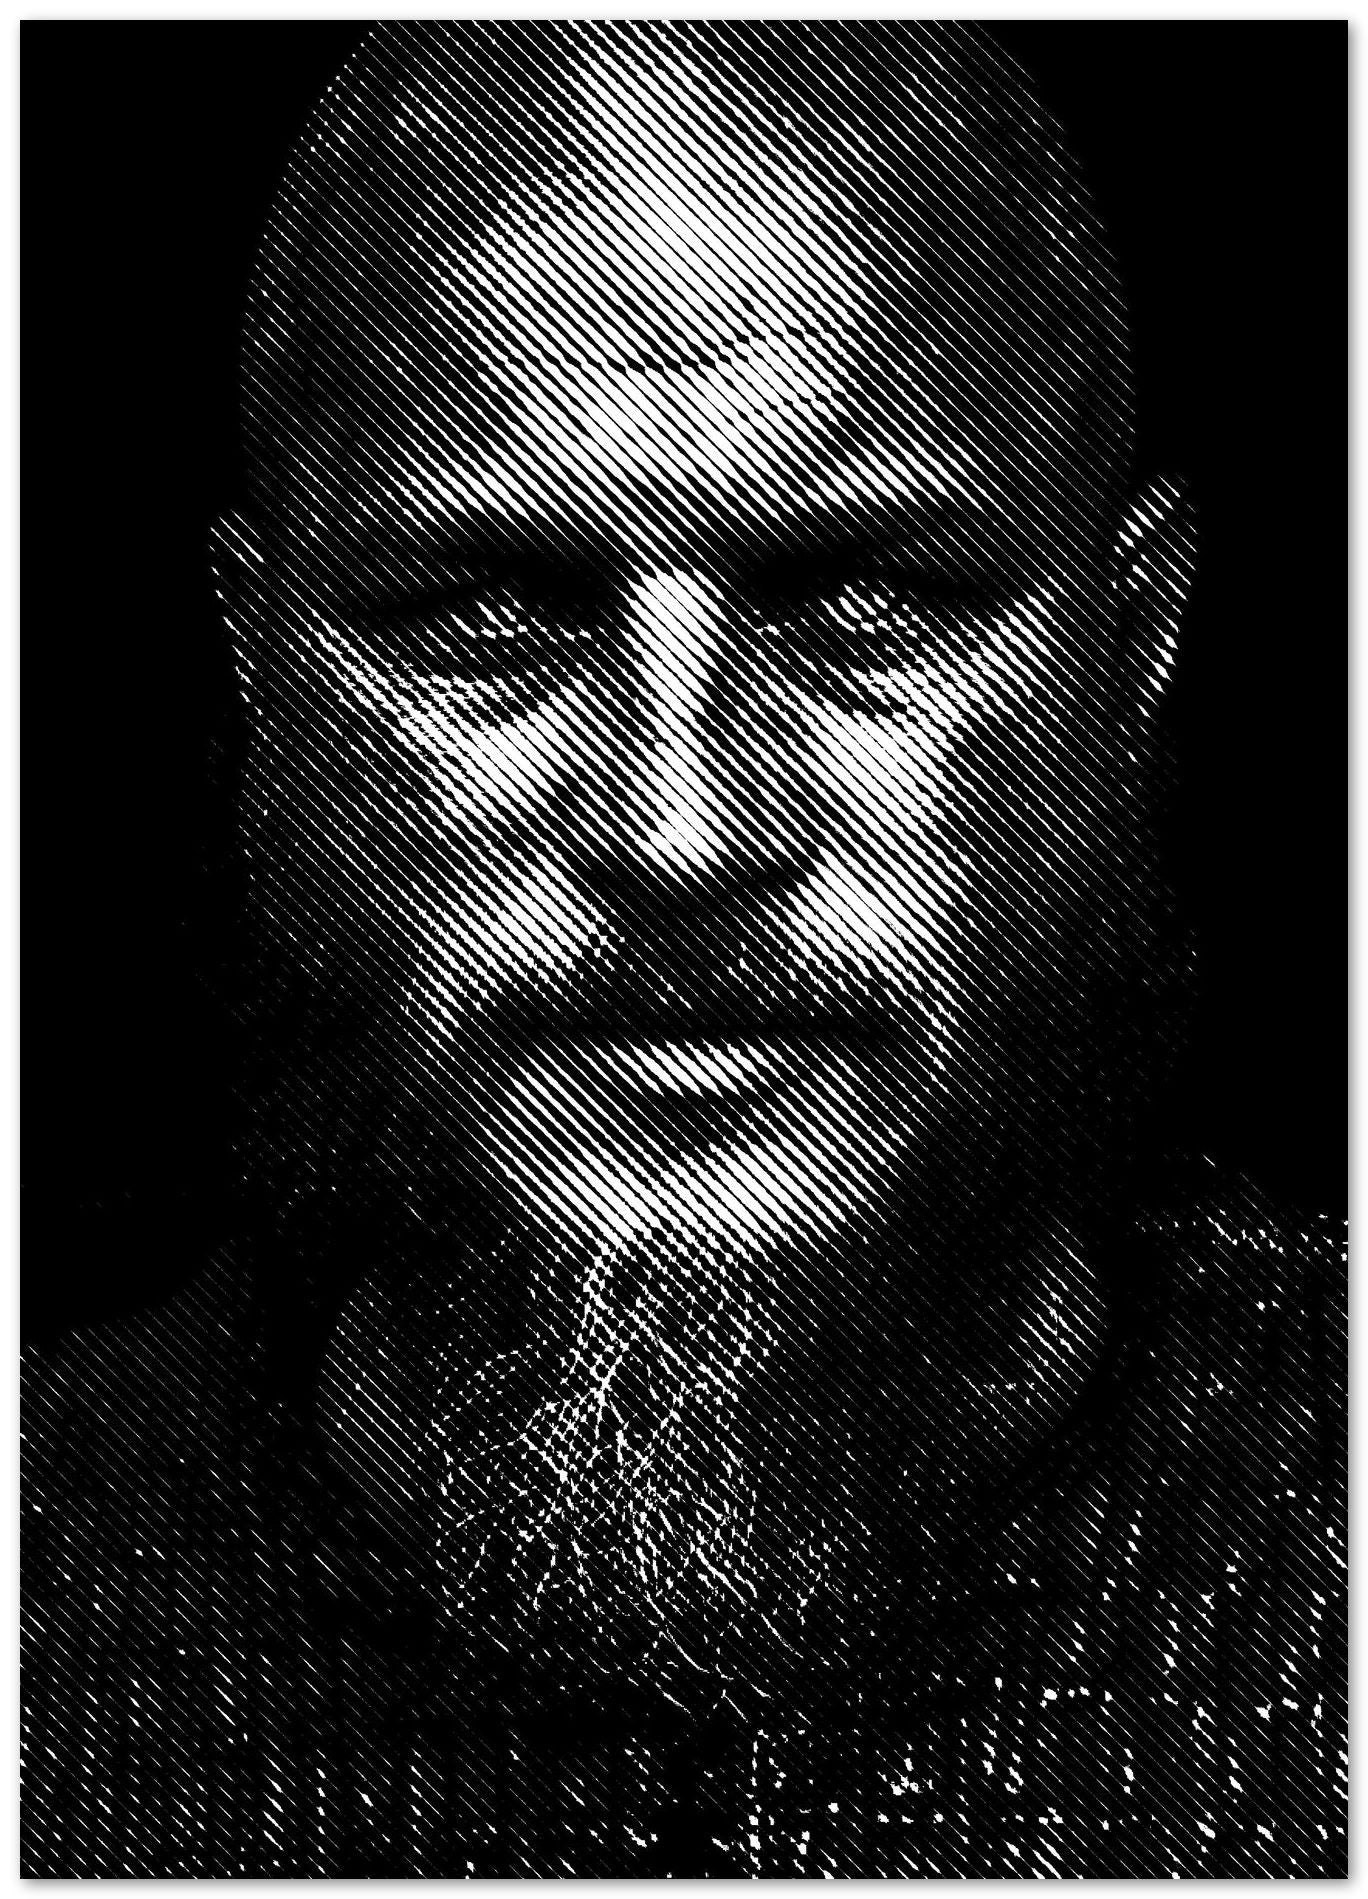 Ragnar Lodbrok - @Vecto